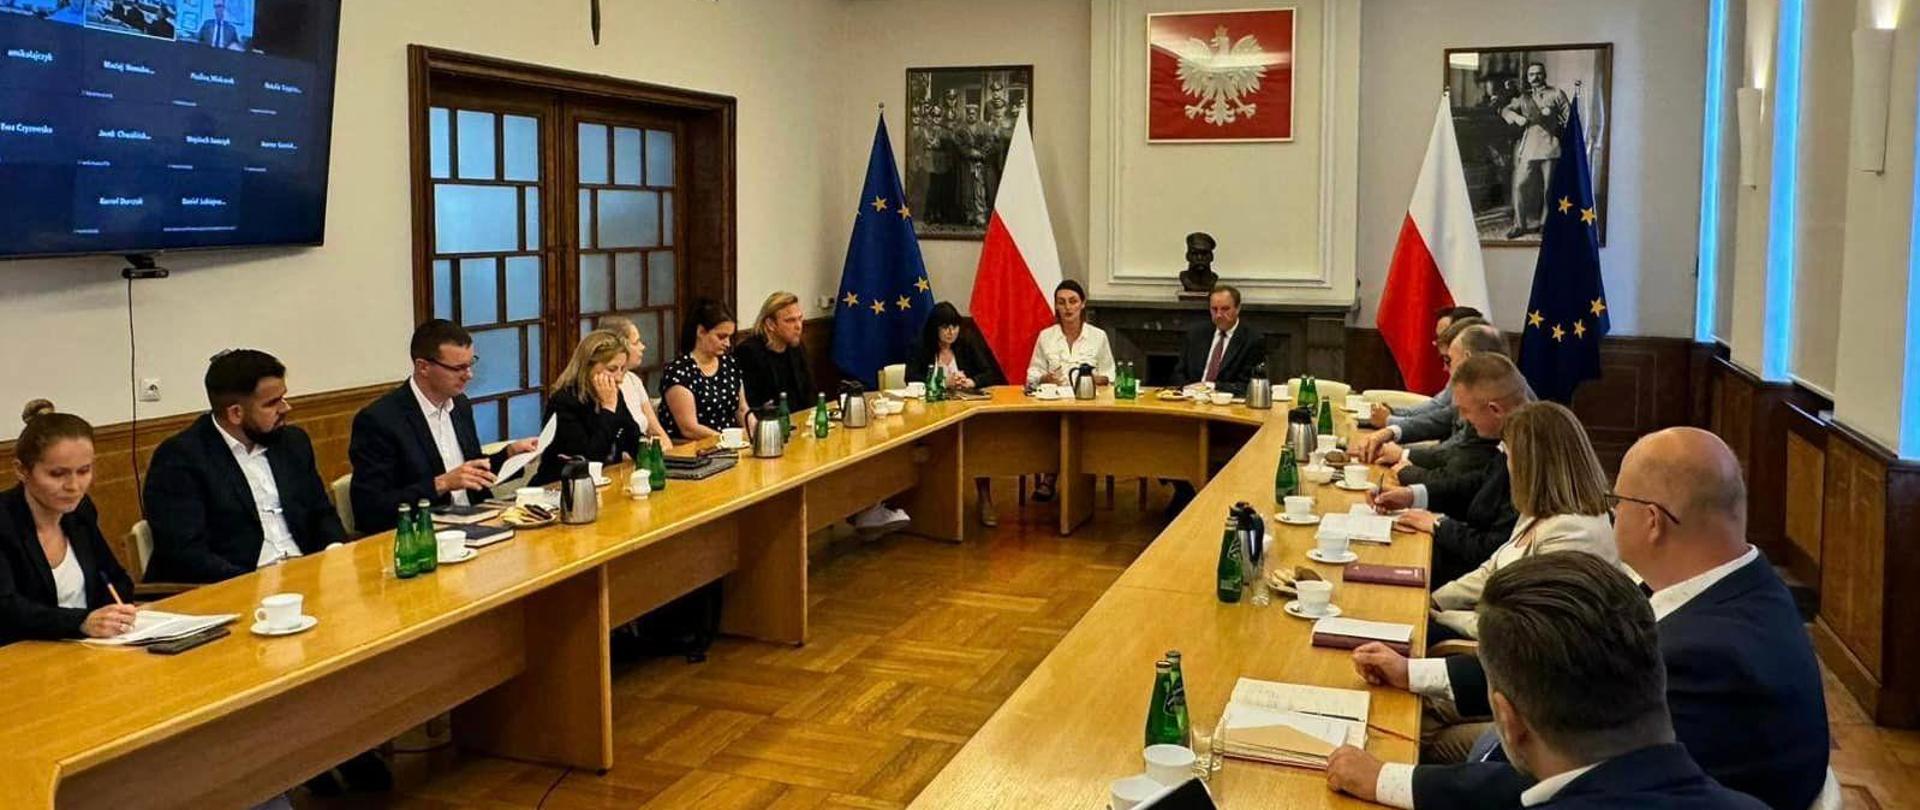 kilkanaście osób siedzi przy okrągłym stole i dyskutuje. w tle f;lagi Polski i UE